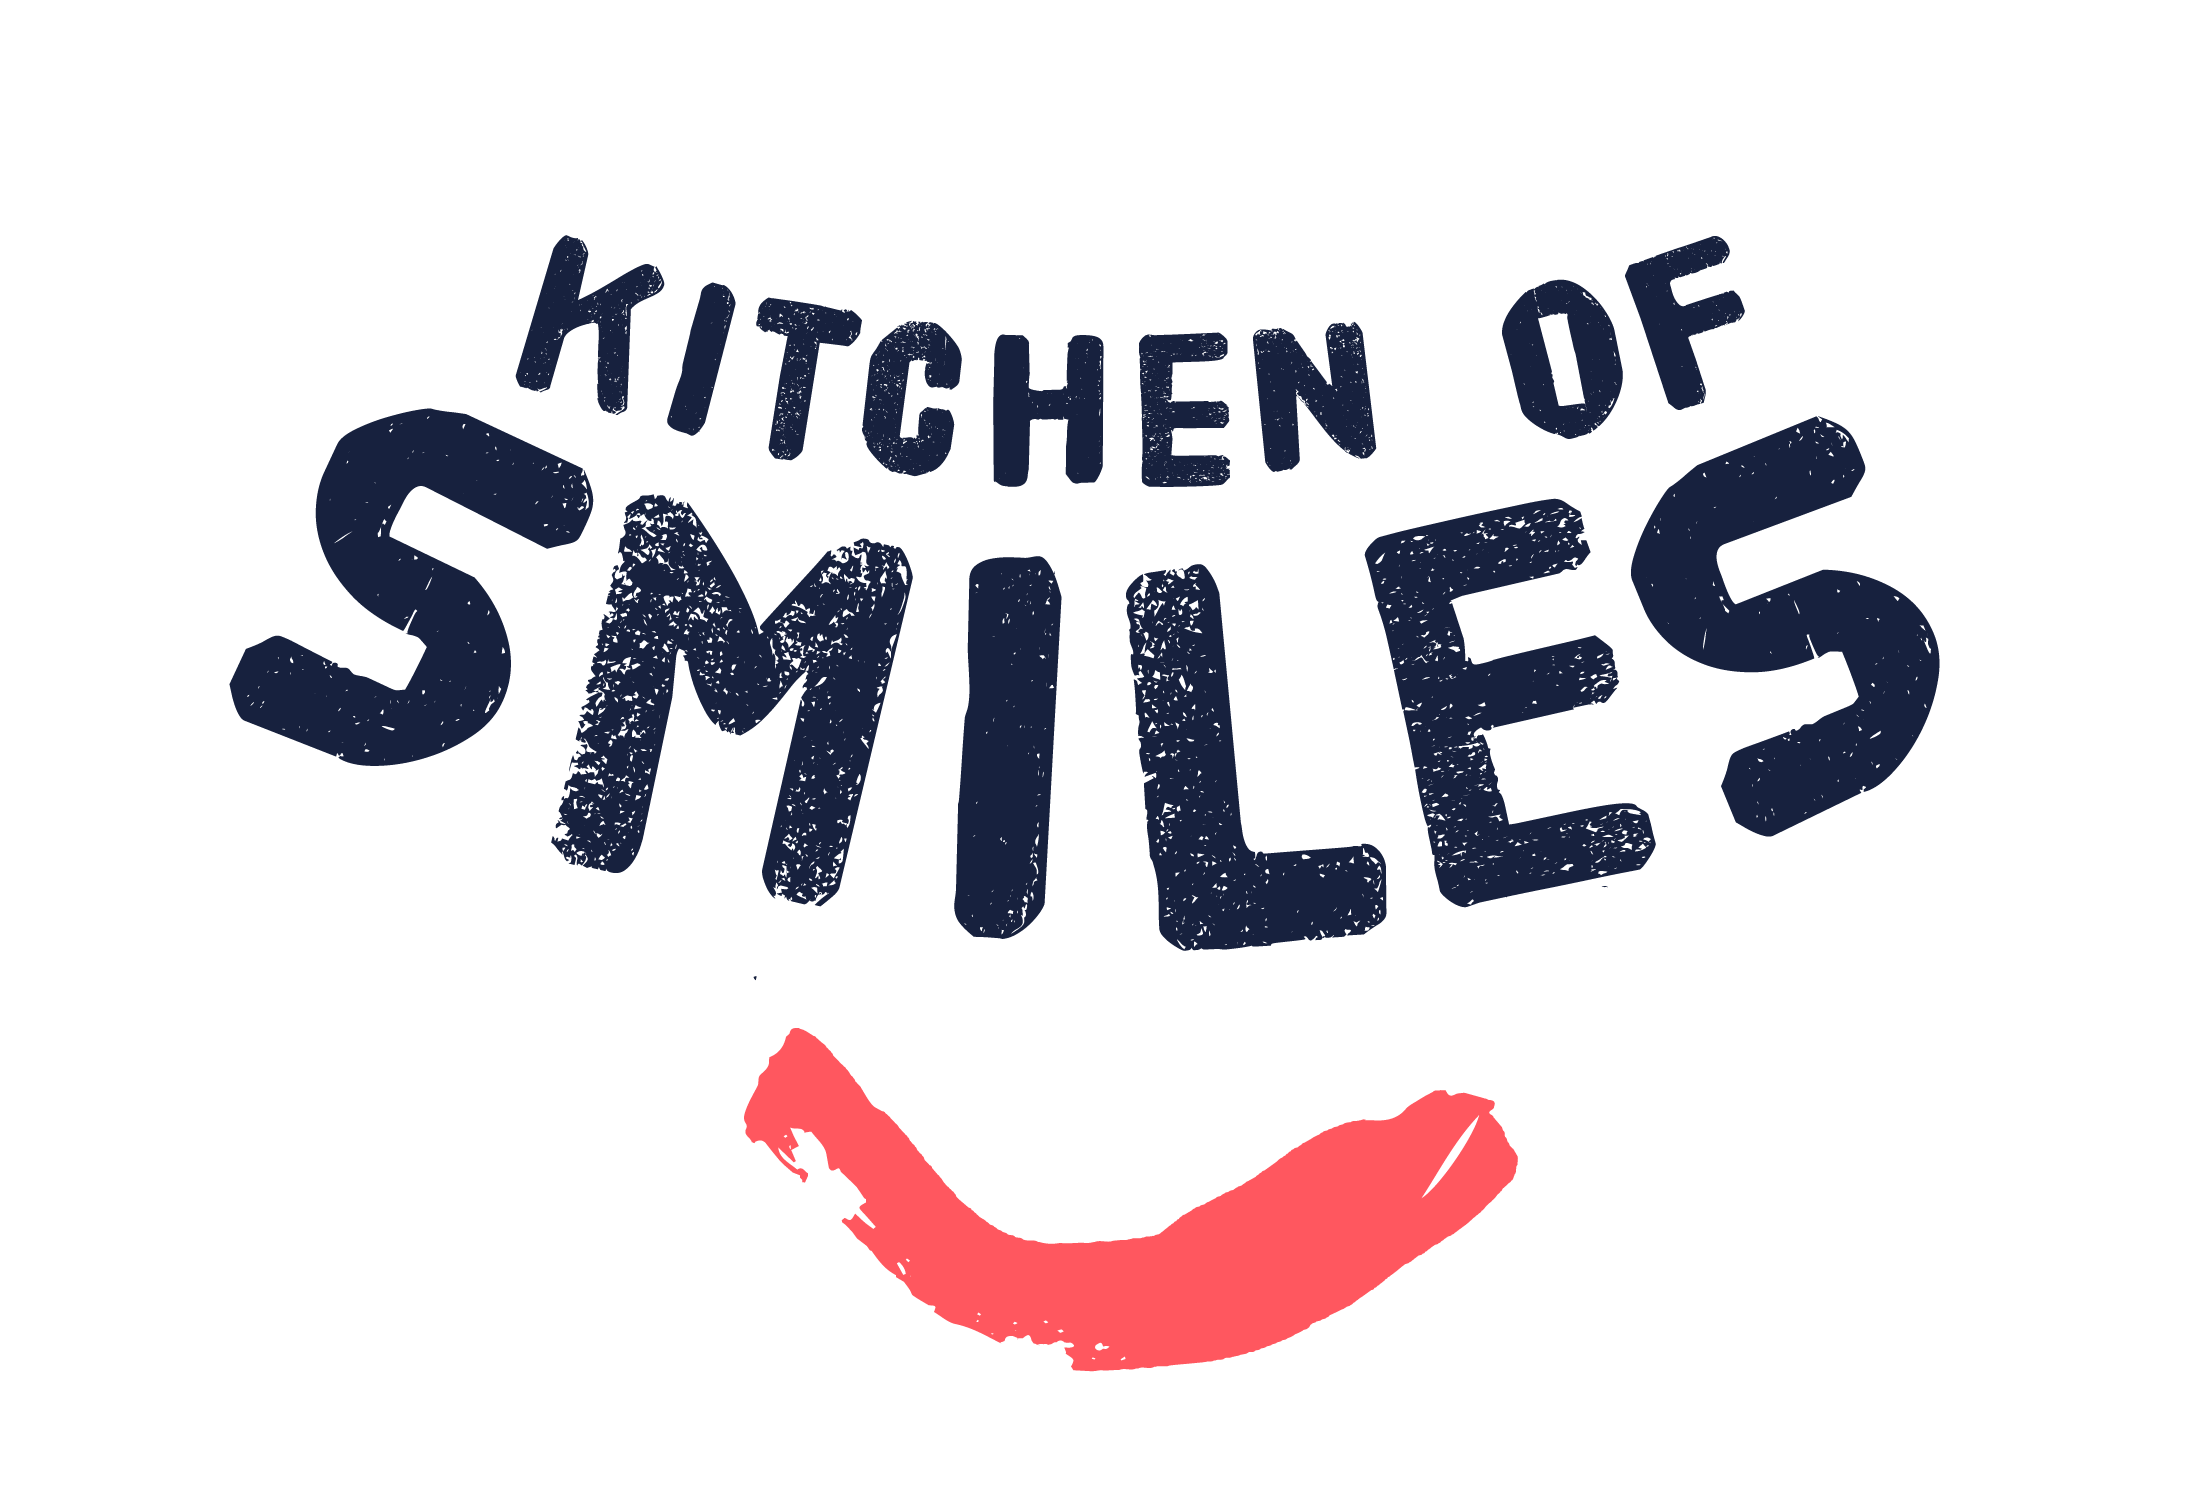 Kitchen of smiles